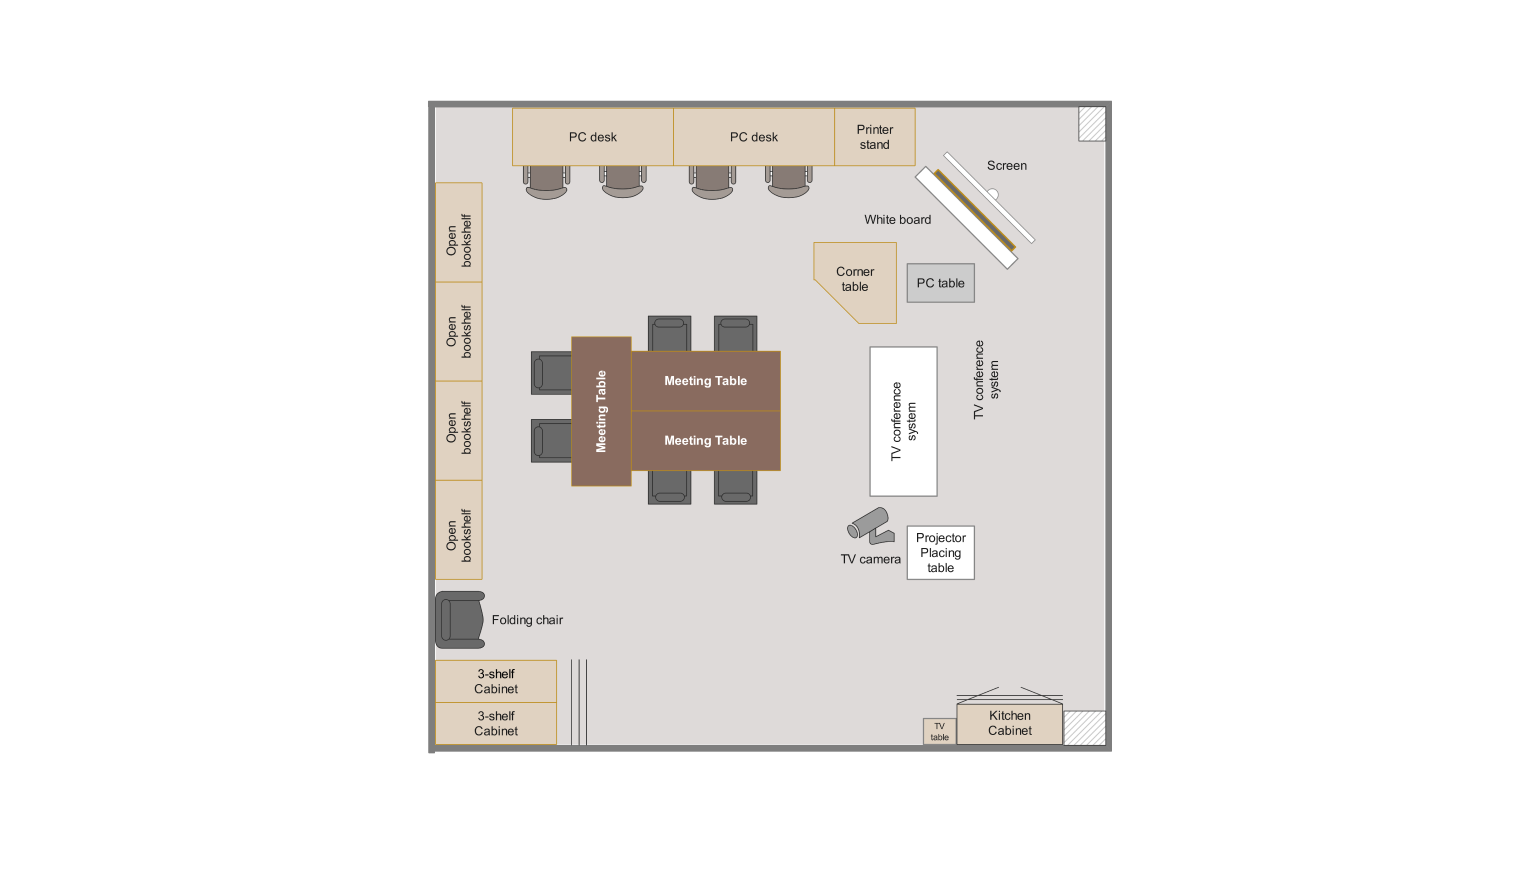 Floor Plan for classroom